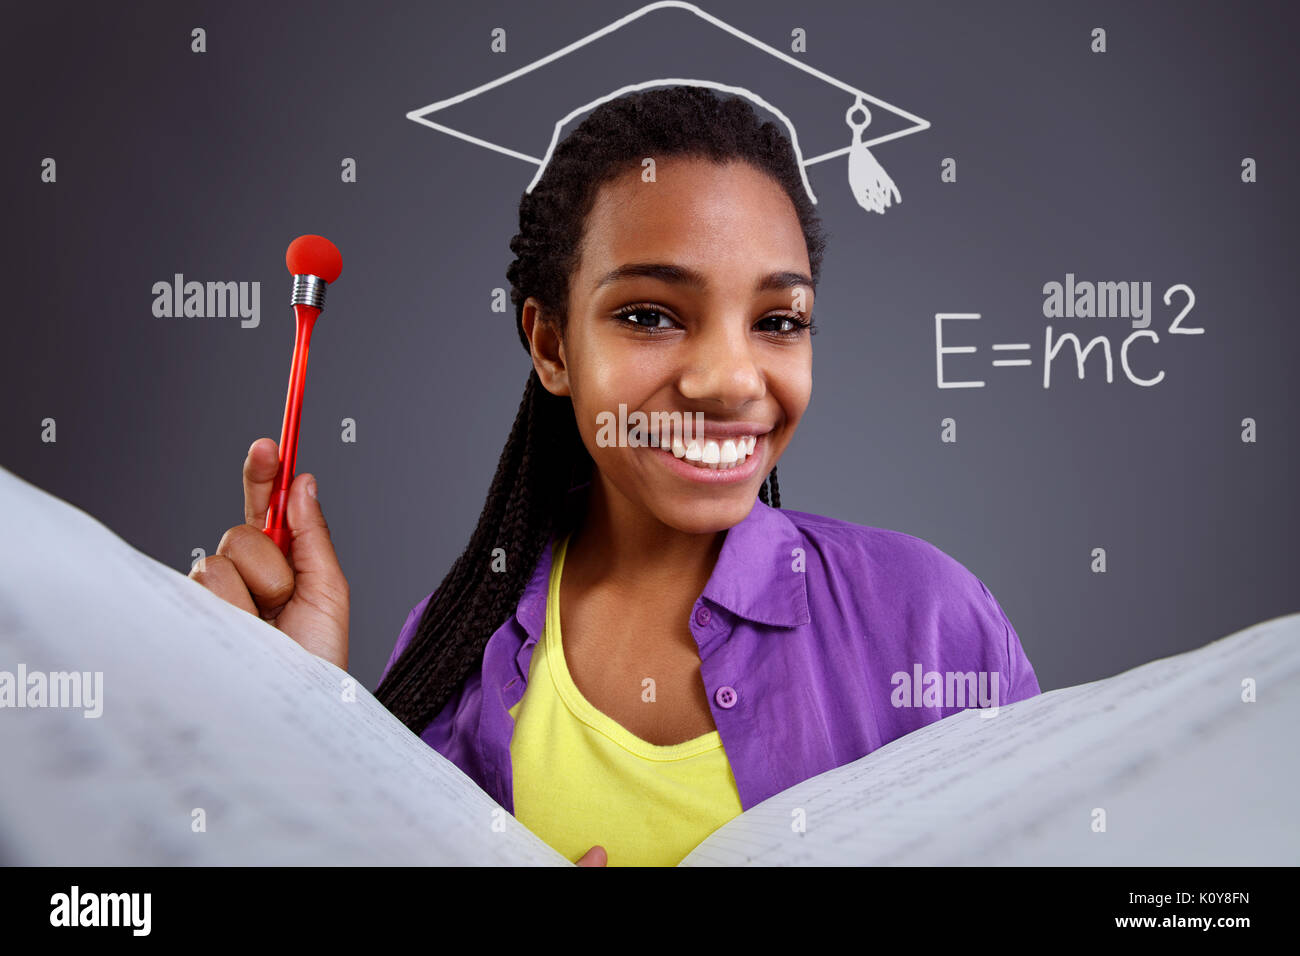 Erziehung in der Schule - glückliche Schülerin dabei mathematische Gleichungen Stockfoto